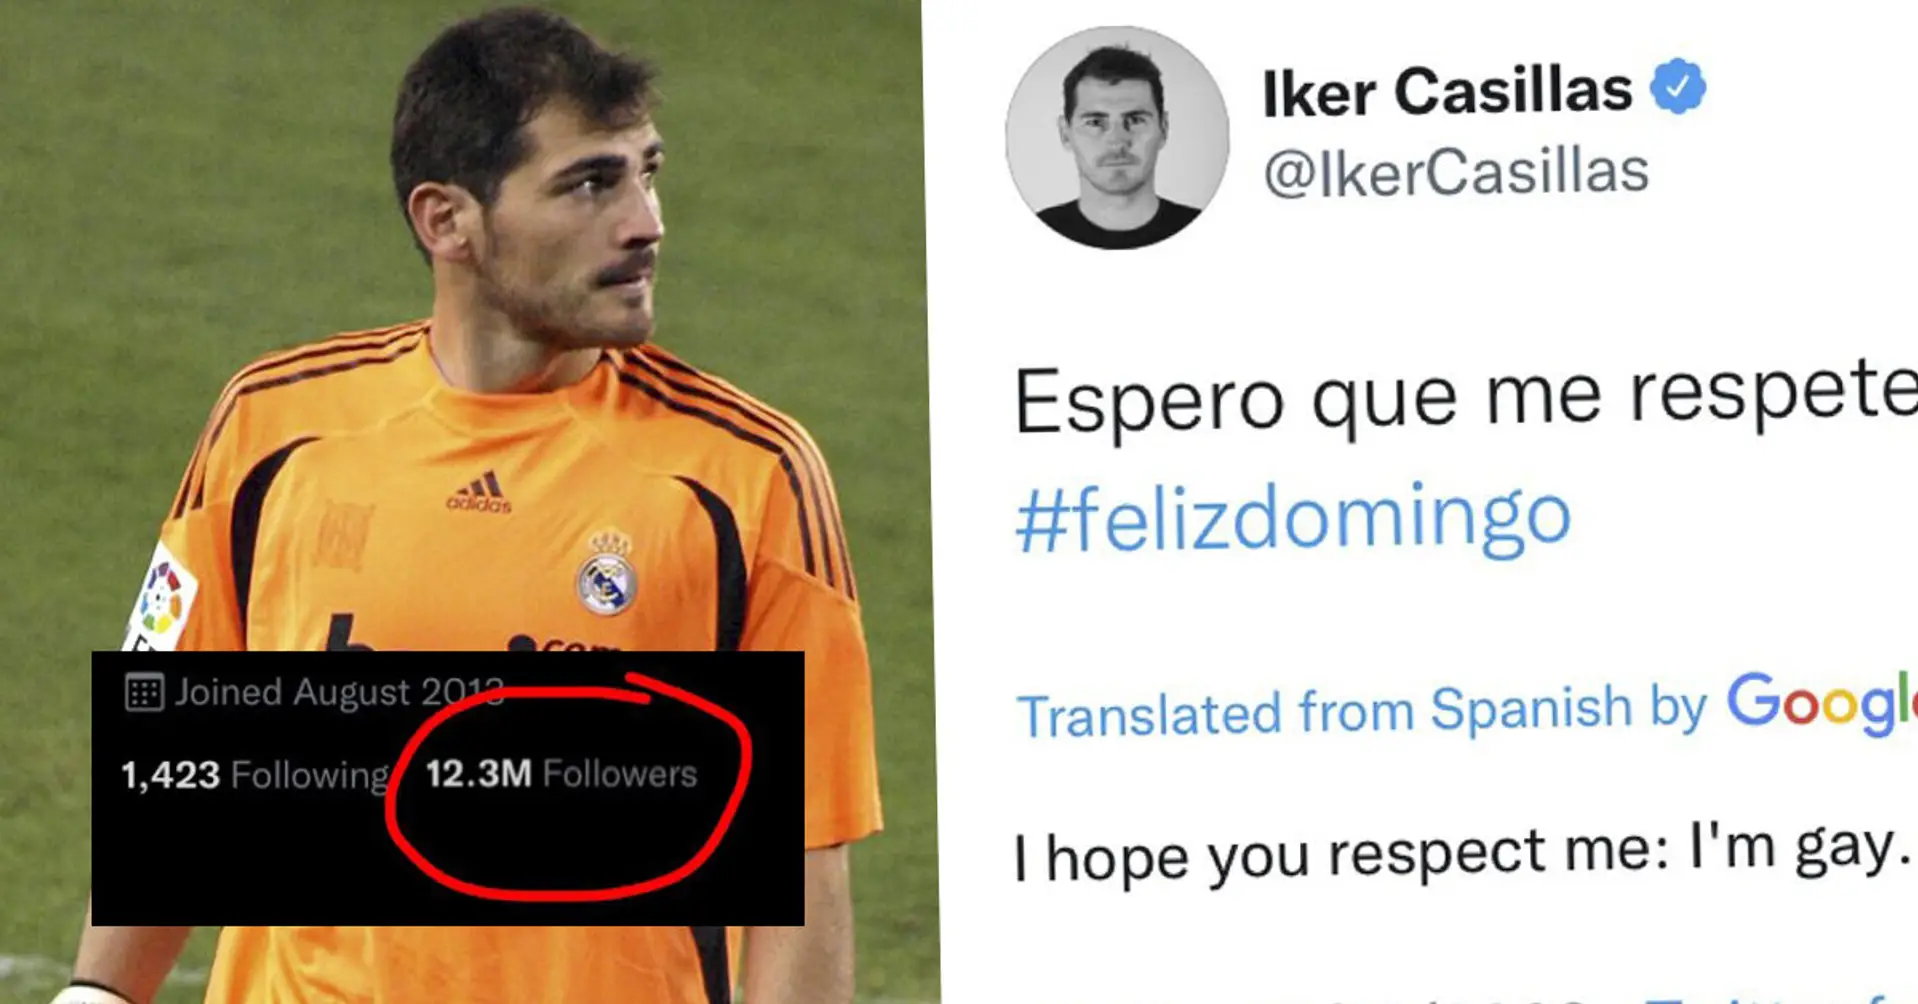 Casillas twitterte, er sei schwul, und löschte dann diesen Tweet. Ratet mal, wie viele Leute sich in eineinhalb Stunden von Iker abgemeldet haben? 